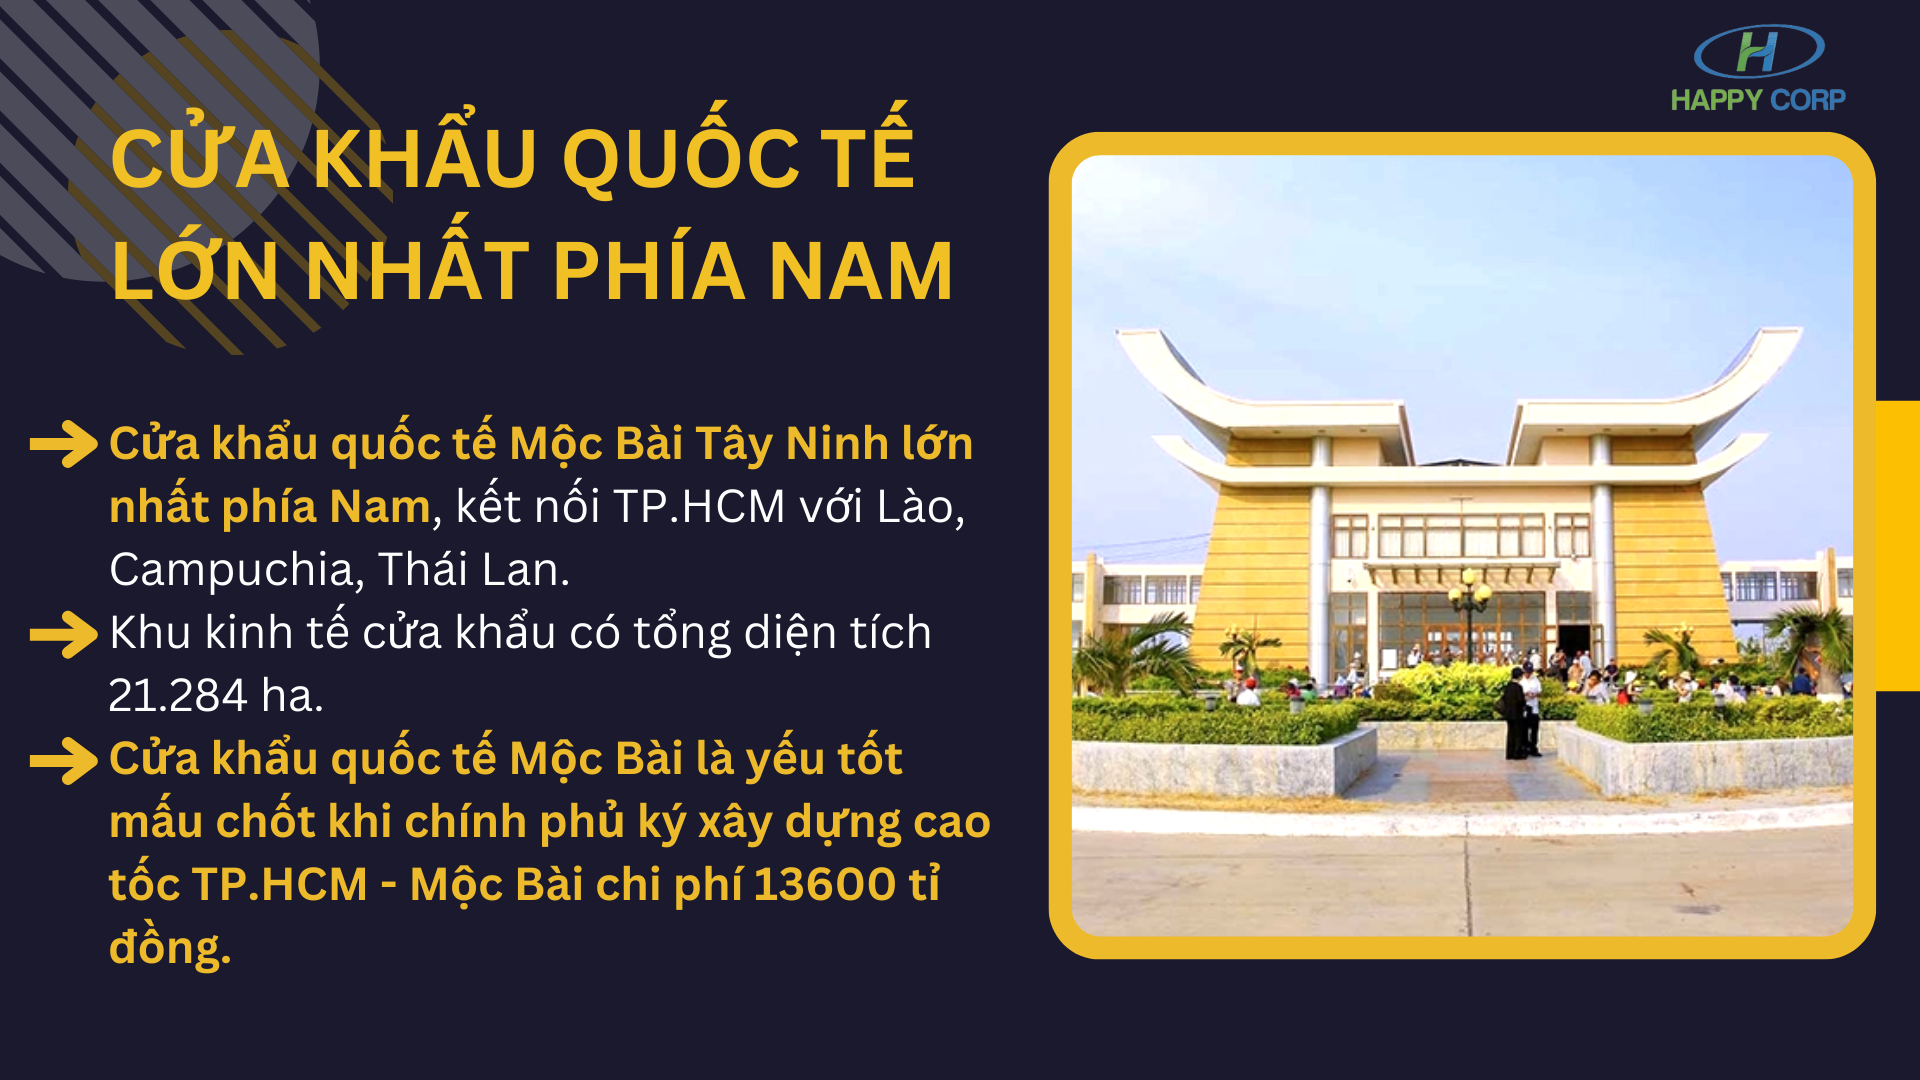 Cửa khẩu Mộc Bài - Cửa khẩu quốc tế lớn nhất phía Nam Việt Nam